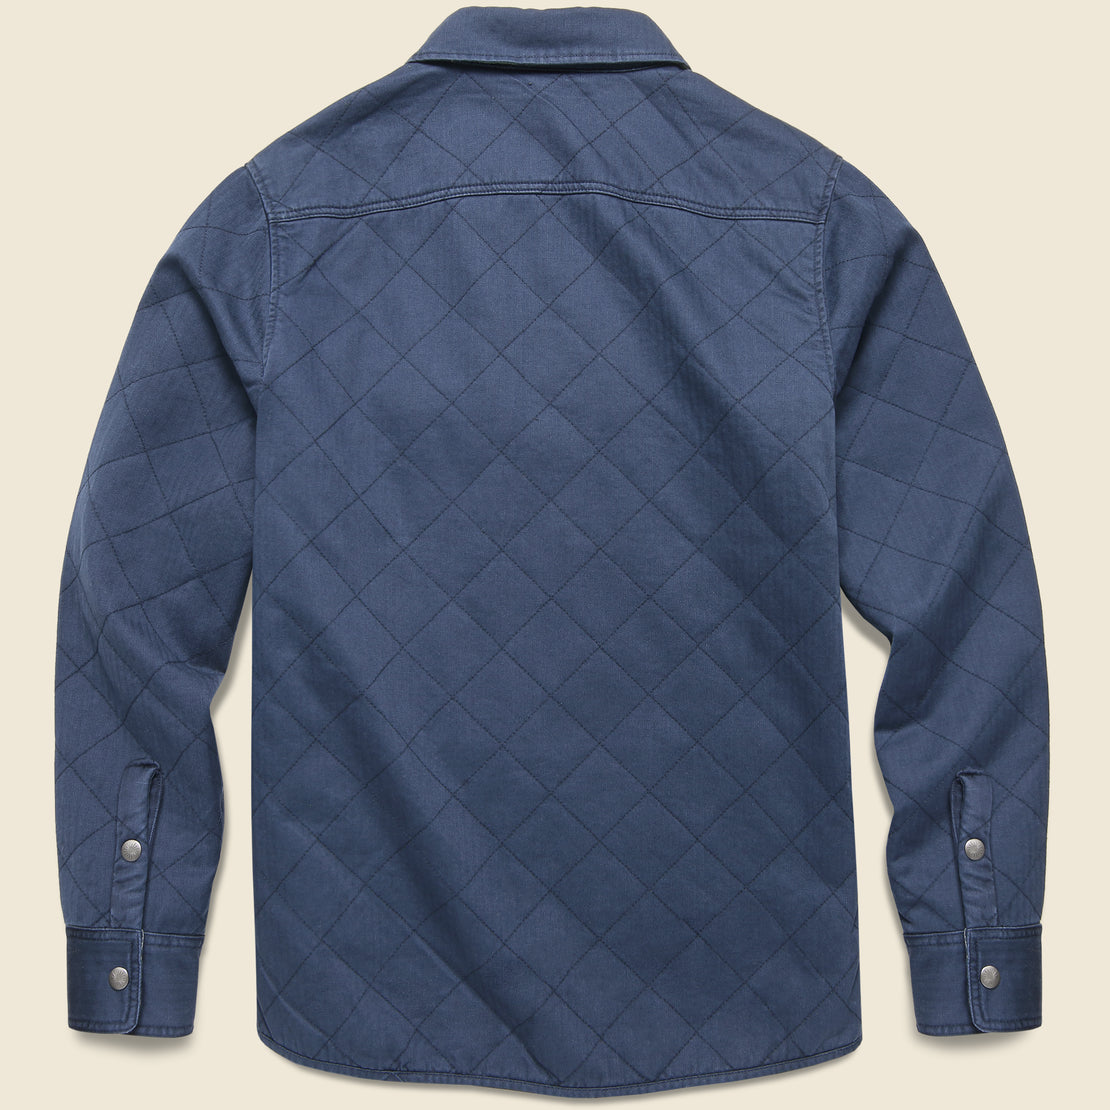 Reverse Bondi Jacket - Navy/Six Rivers Turquoise